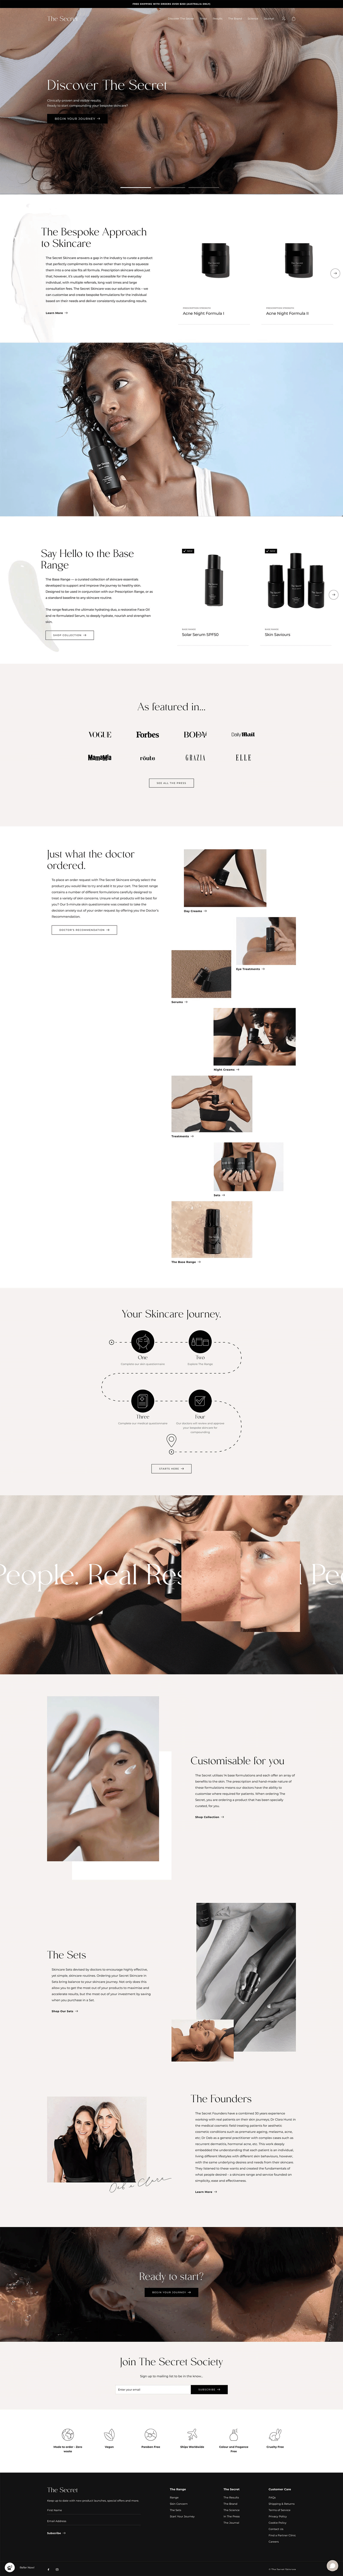 The Secret Skincare ecommerce full website design.